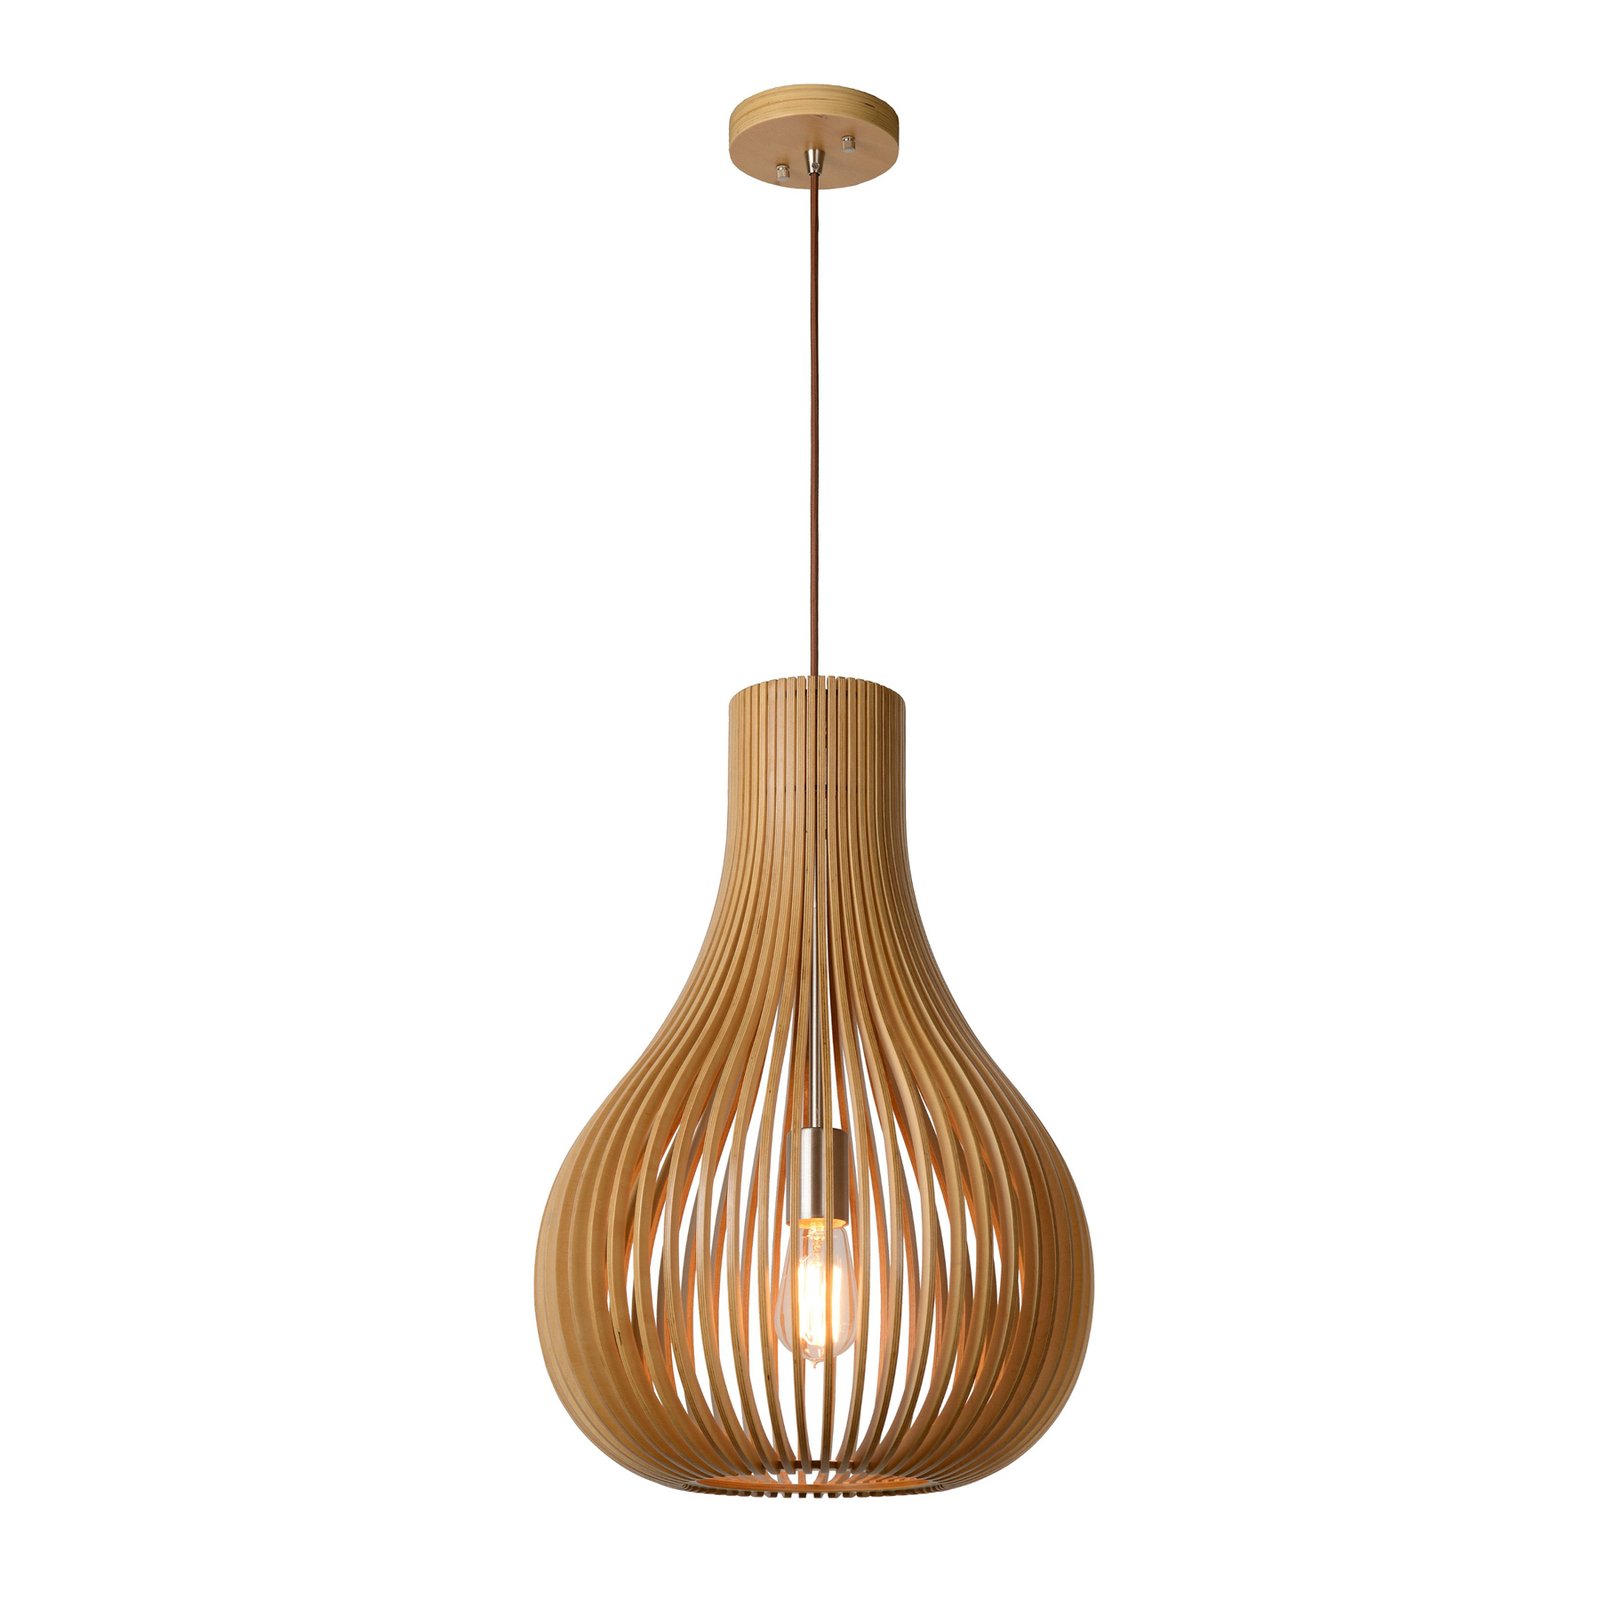 Bodo pendant light, light-coloured wood